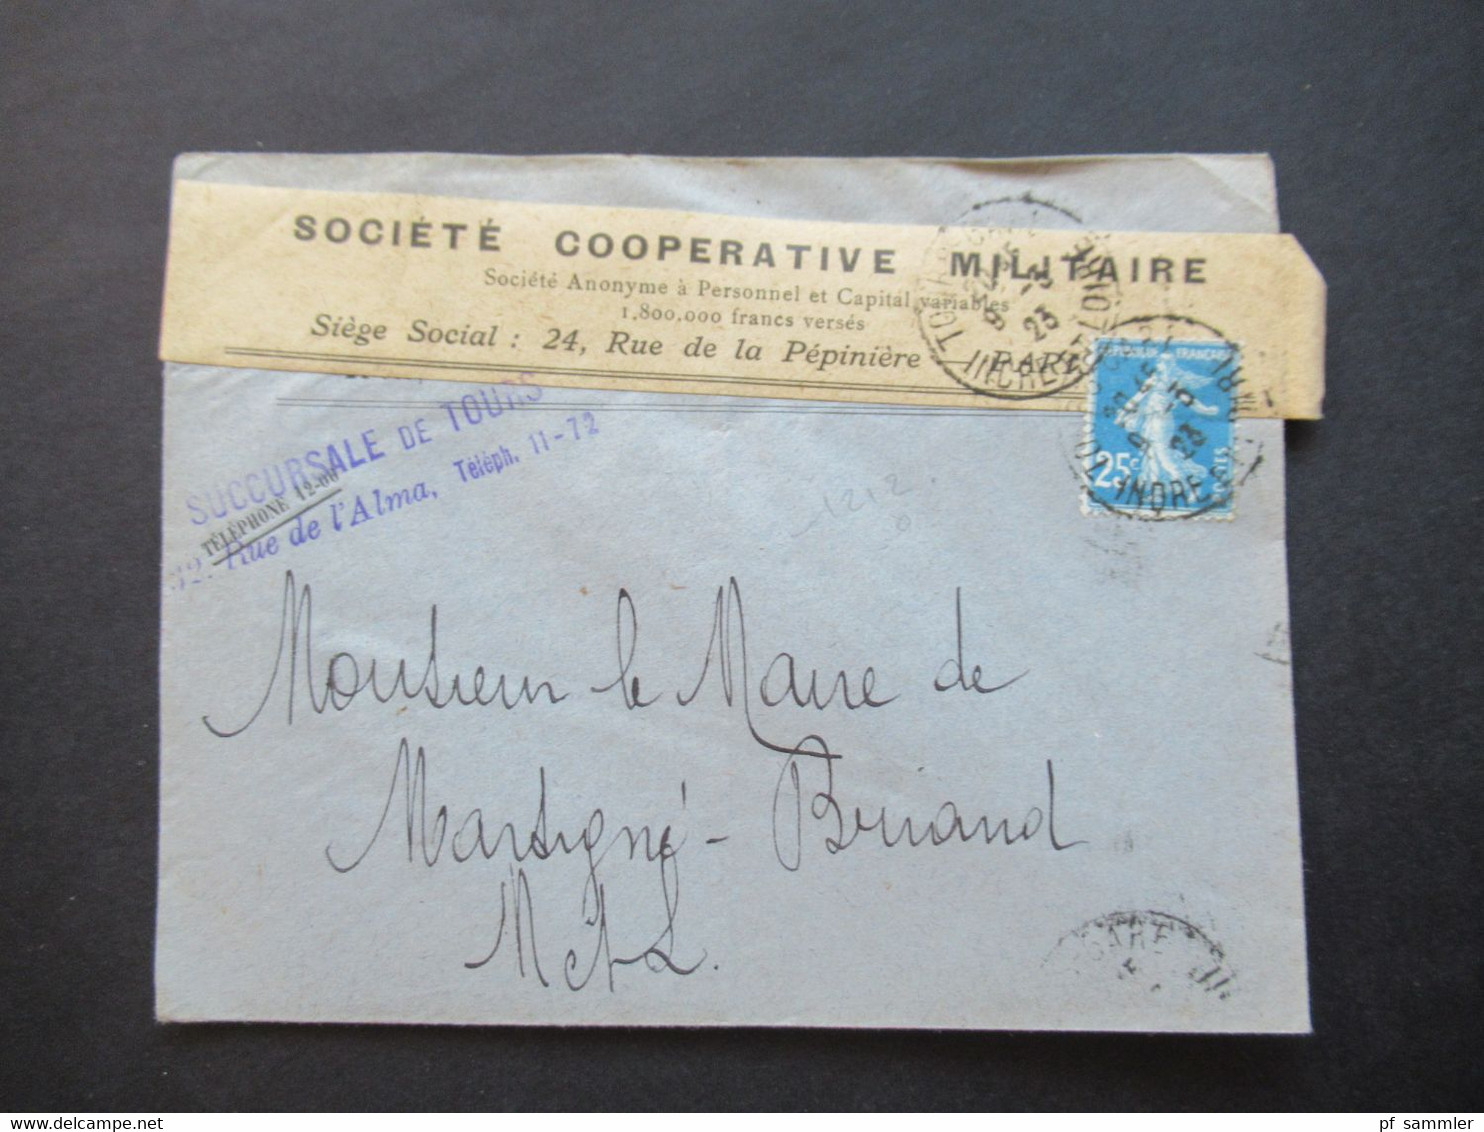 Frankreich 1923 Umschlag Mit Aufkleber Societe Cooperative Militaire / Stempel Succursale De Tours Rue De L'Alma - Covers & Documents